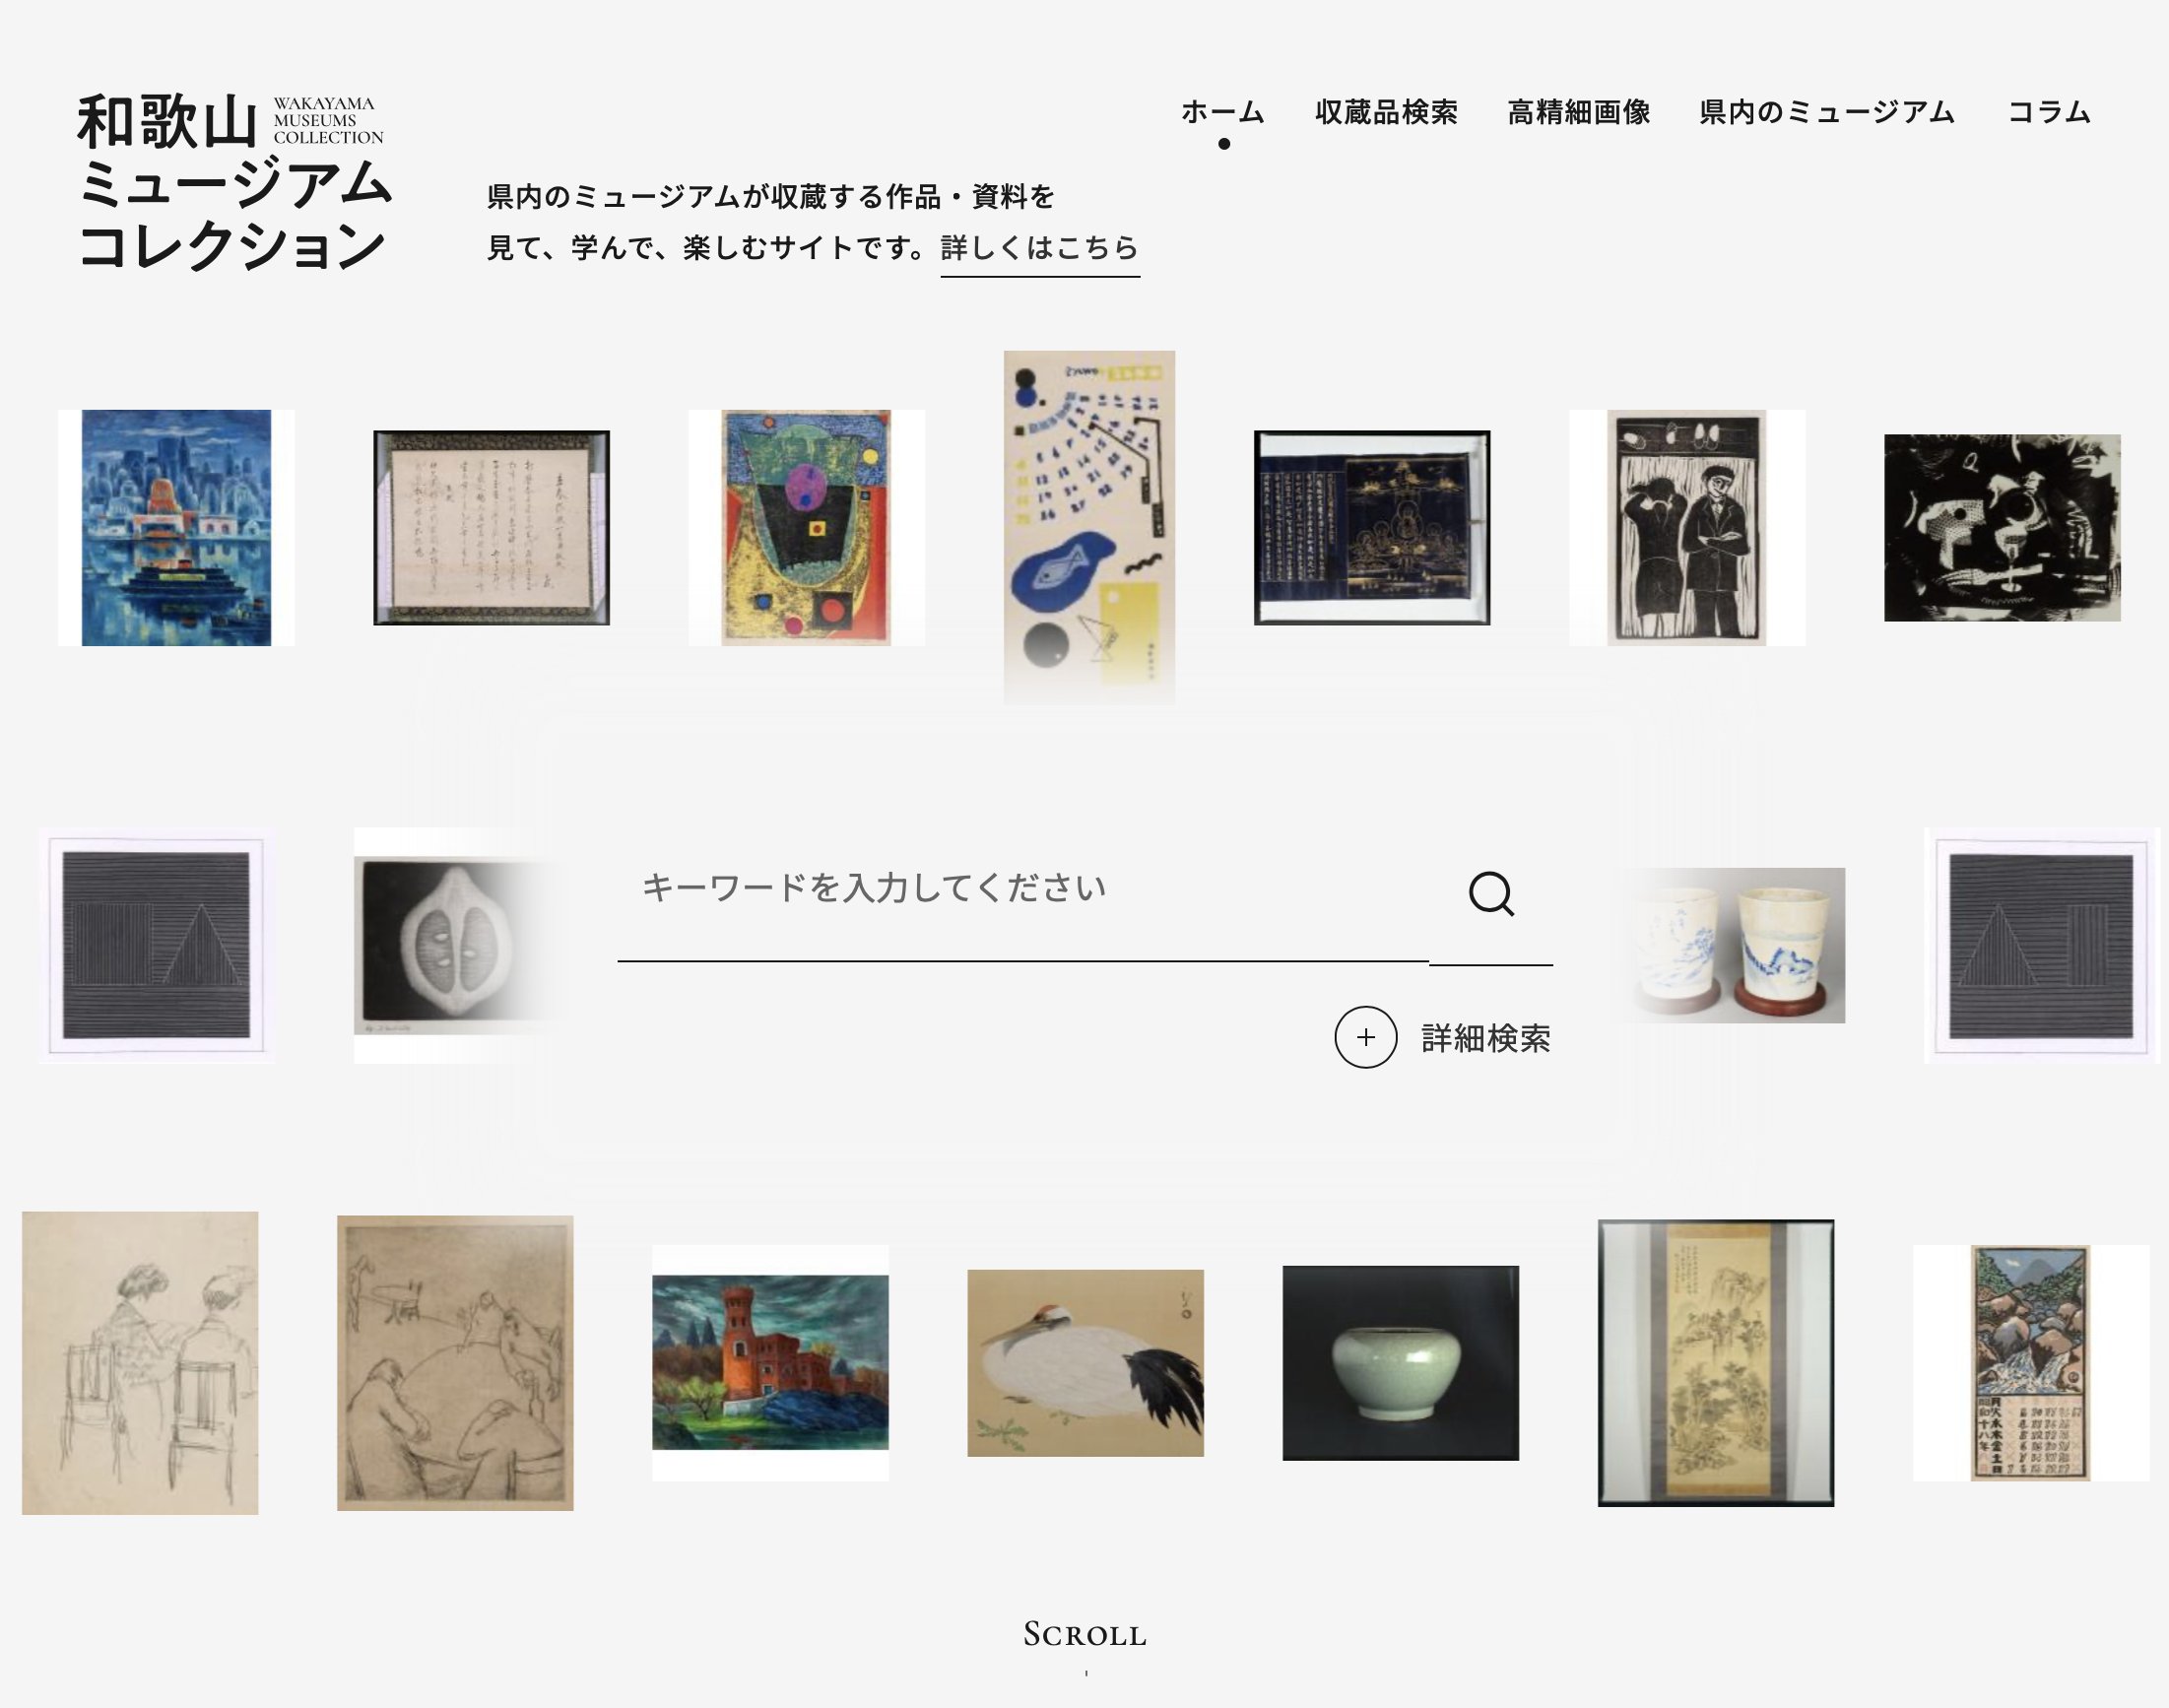 ポータルサイト「和歌山ミュージアムコレクション」について